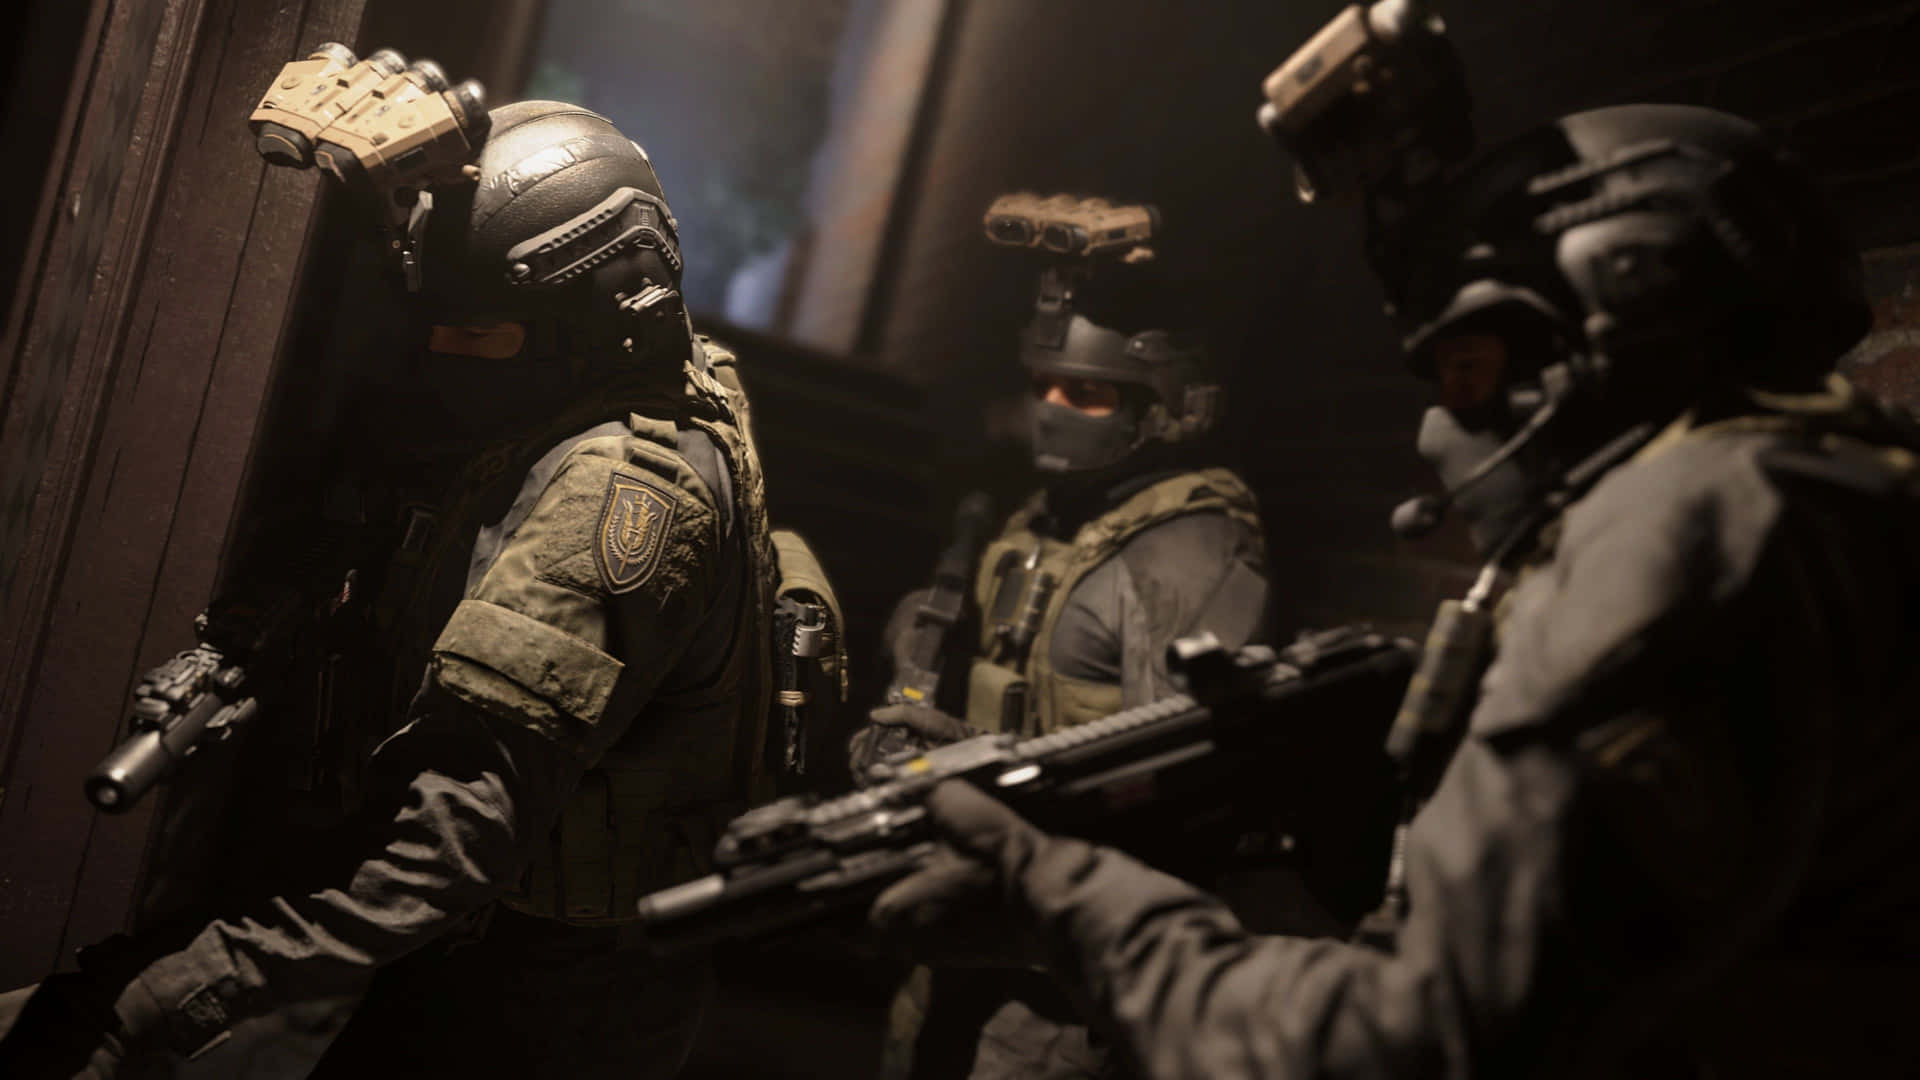 4kcall Of Duty Modern Warfare Bakgrund Spelartrupp På Väg In I Byggnaden